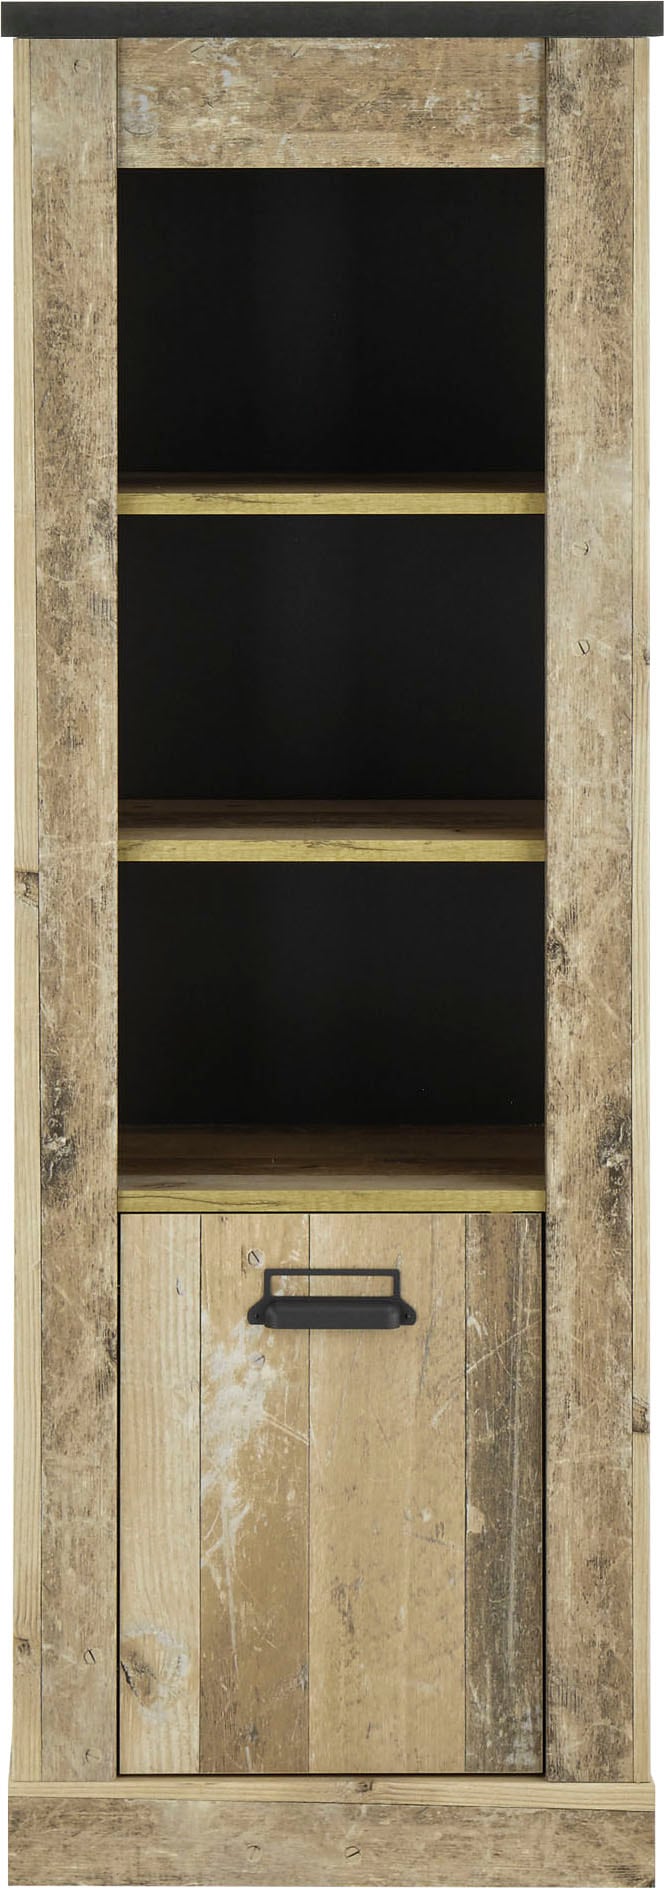 Home affaire Midischrank »SHERWOOD«, in modernem Holz Dekor, mit Apothekergriffen aus Metall, Höhe 146 cm